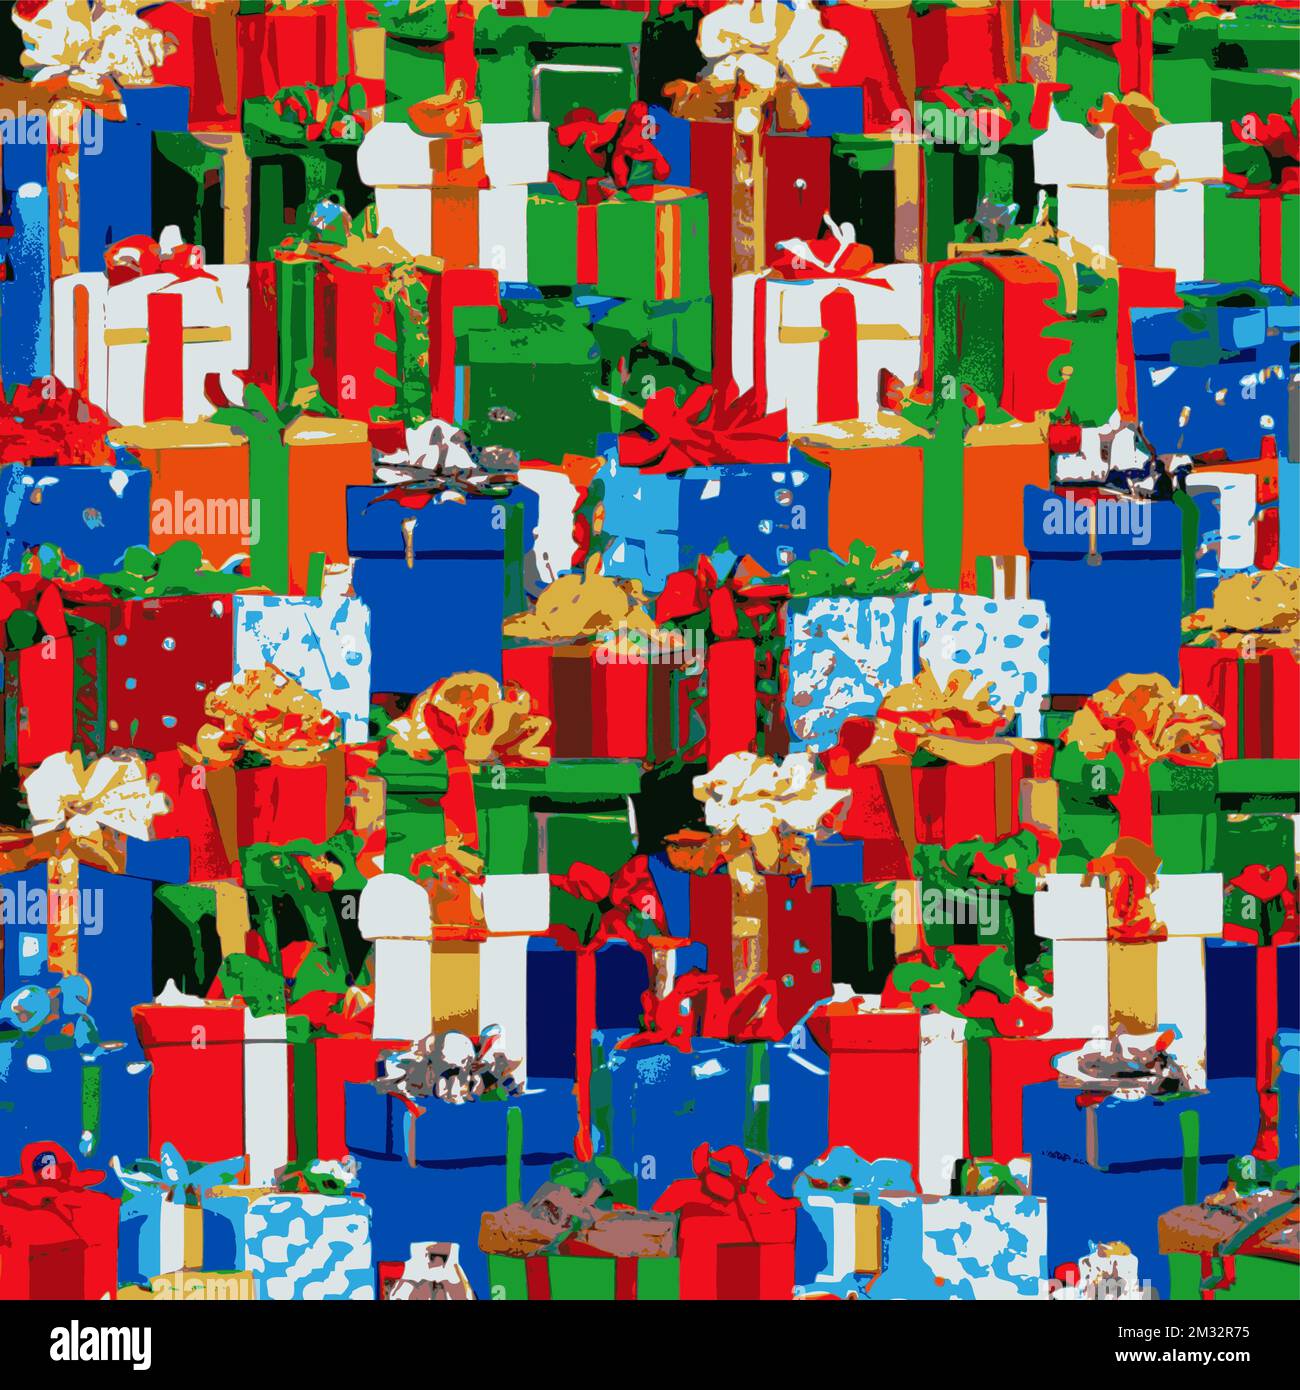 Weihnachtsgeschenkpakete, verpackt mit Bändern und Schleifen. Hintergrund mit farbenfroh dekorierten Geschenkboxen. Stock Vektor